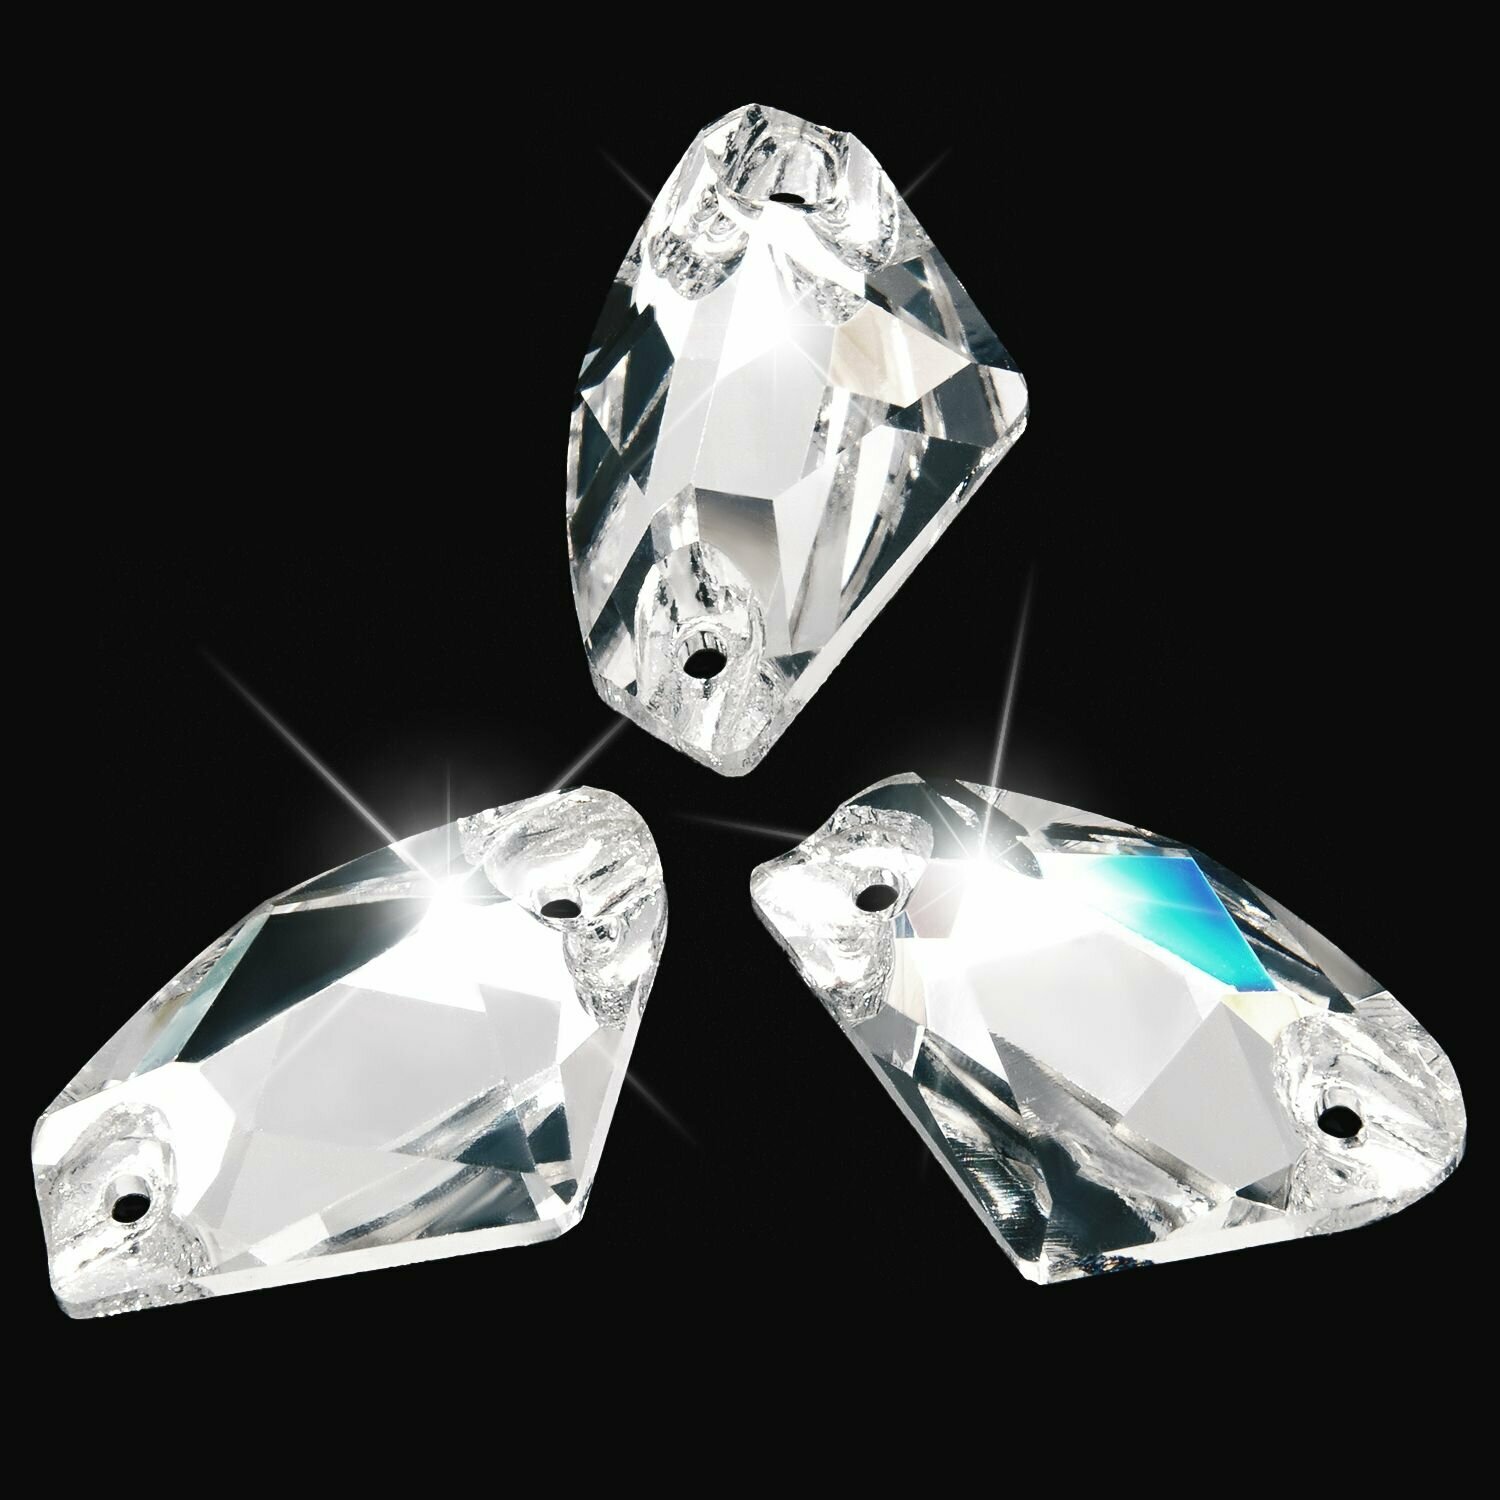 Стразы пришивные хрустальные, стеклянные, форма Галактик цвет Кристалл Crystal (прозрачный белый), 9х14 мм 12 штук, с плоской задней поверхностью и 2 отверстиями для пришивания, марка Dongzhou